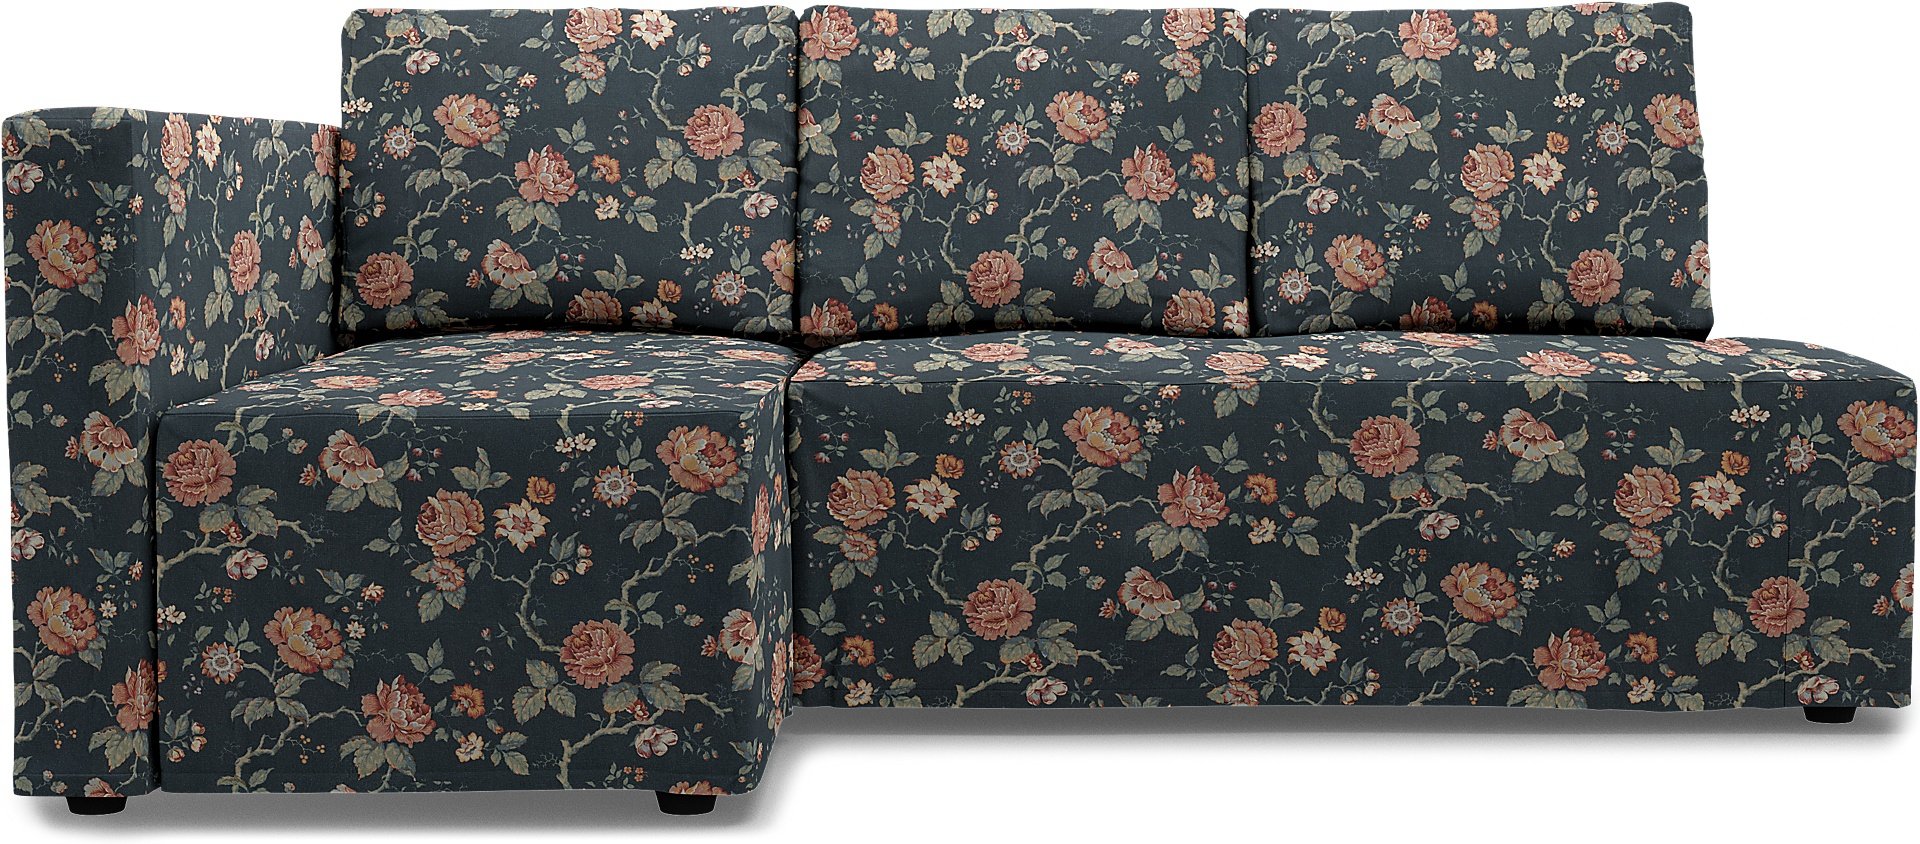 IKEA - Friheten Sofa Bed with Left Chaise Cover, Rosentrad Dark, BEMZ x BORASTAPETER COLLECTION - Be